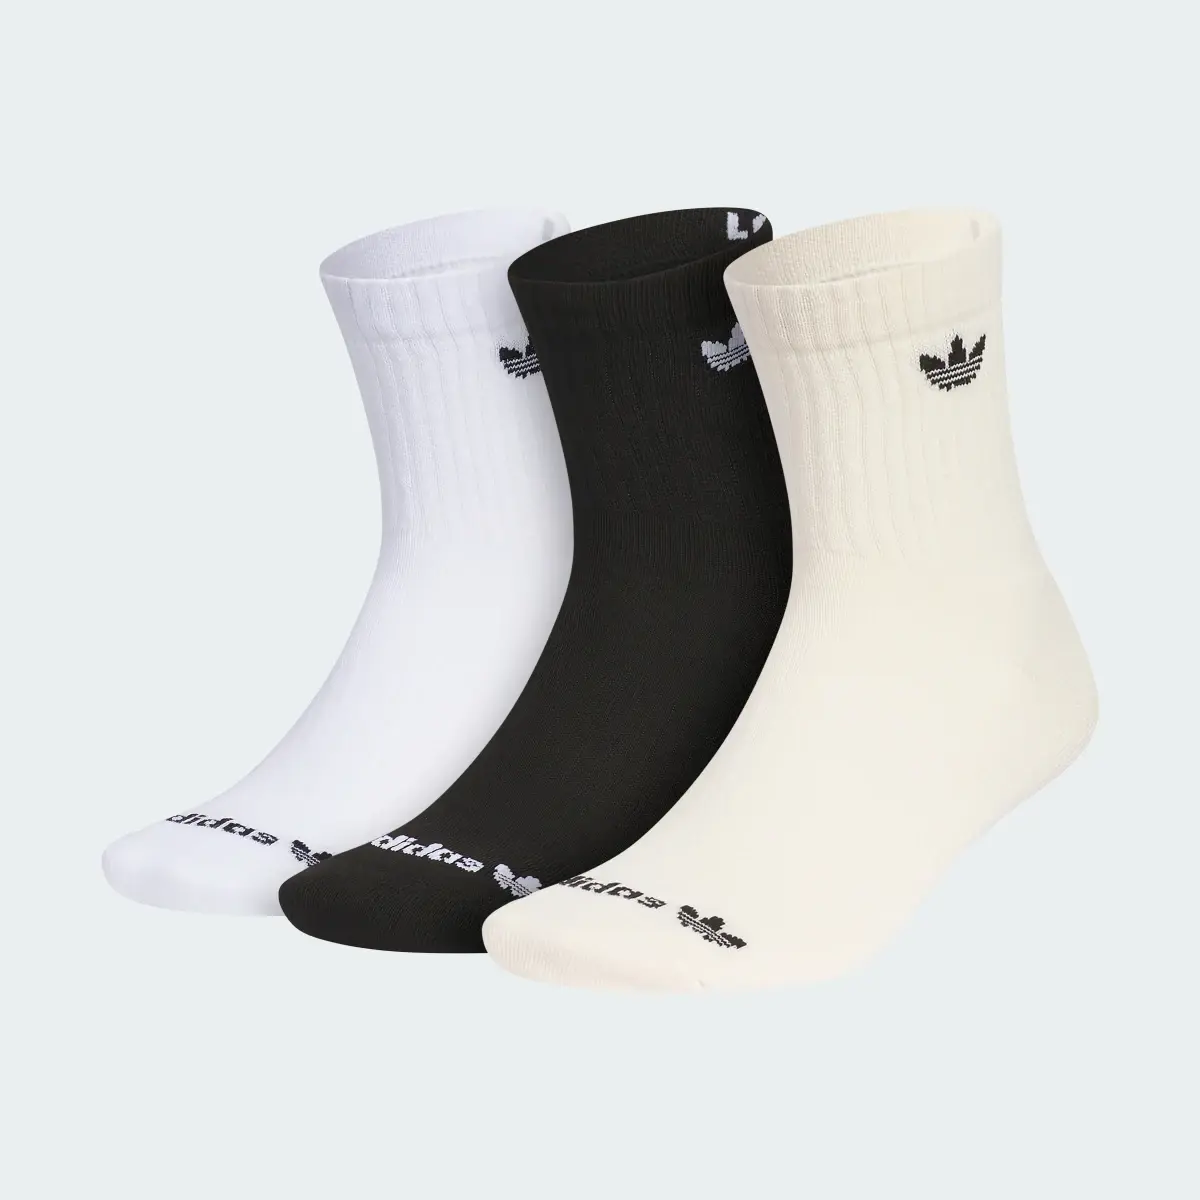 Adidas Originals Trefoil 2.0 3-Pack High Quarter Socks. 2